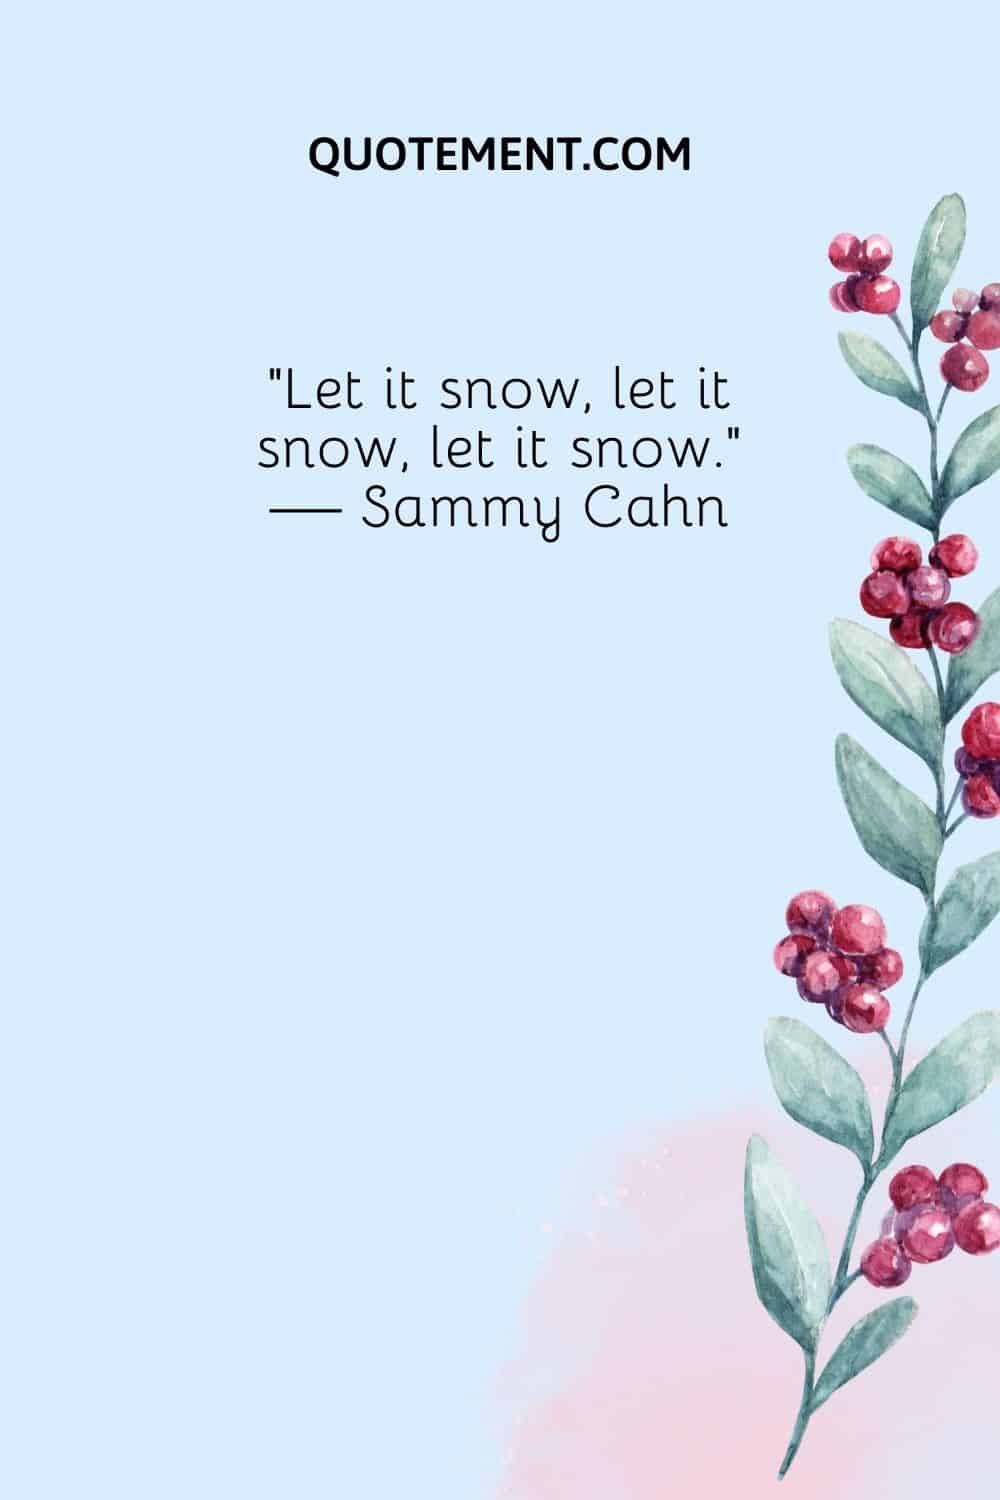 “Let it snow, let it snow, let it snow.” — Sammy Cahn